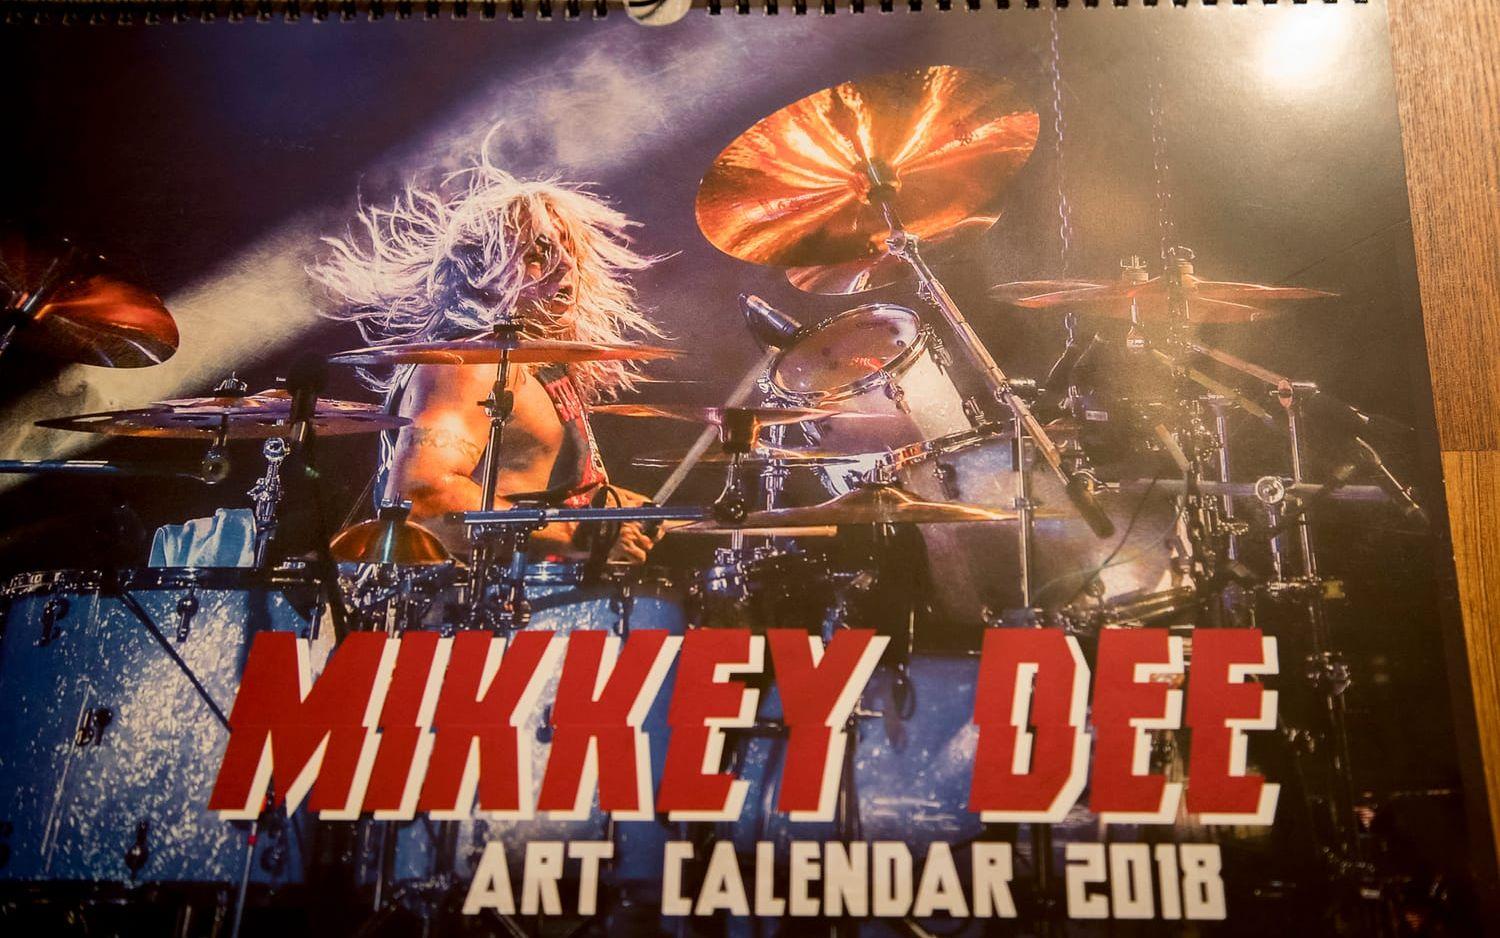 2018 blir Mikkey Dees år. I alla fall enligt den här kalendern. Foto: Adam Ihse.